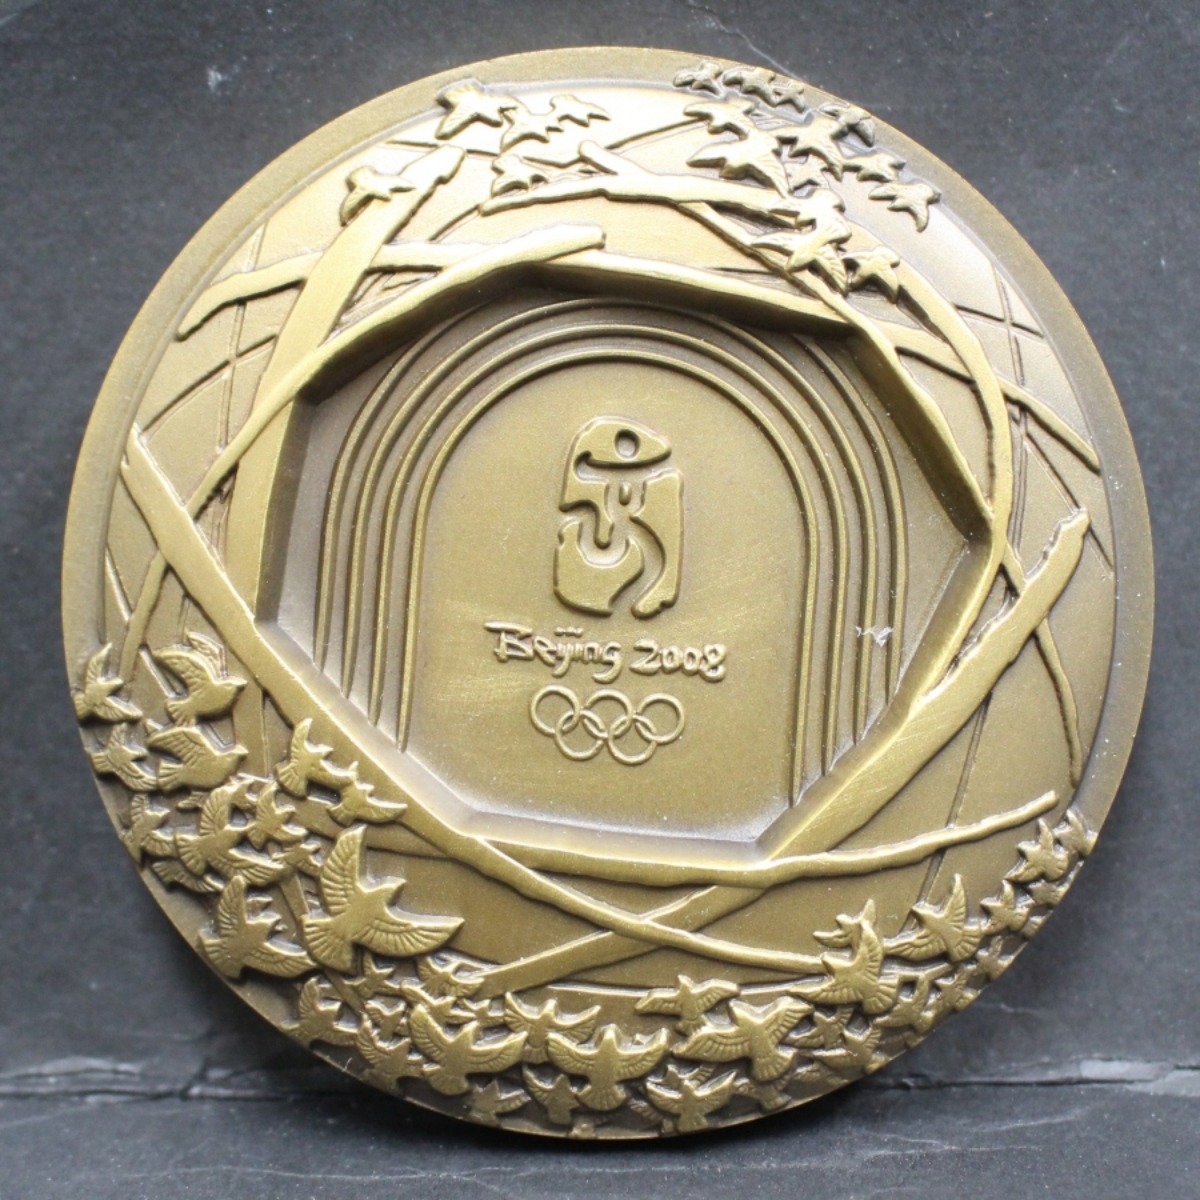 중국 2008년 베이징 (북경) 올림픽 기념 마스코트 도안 황동메달